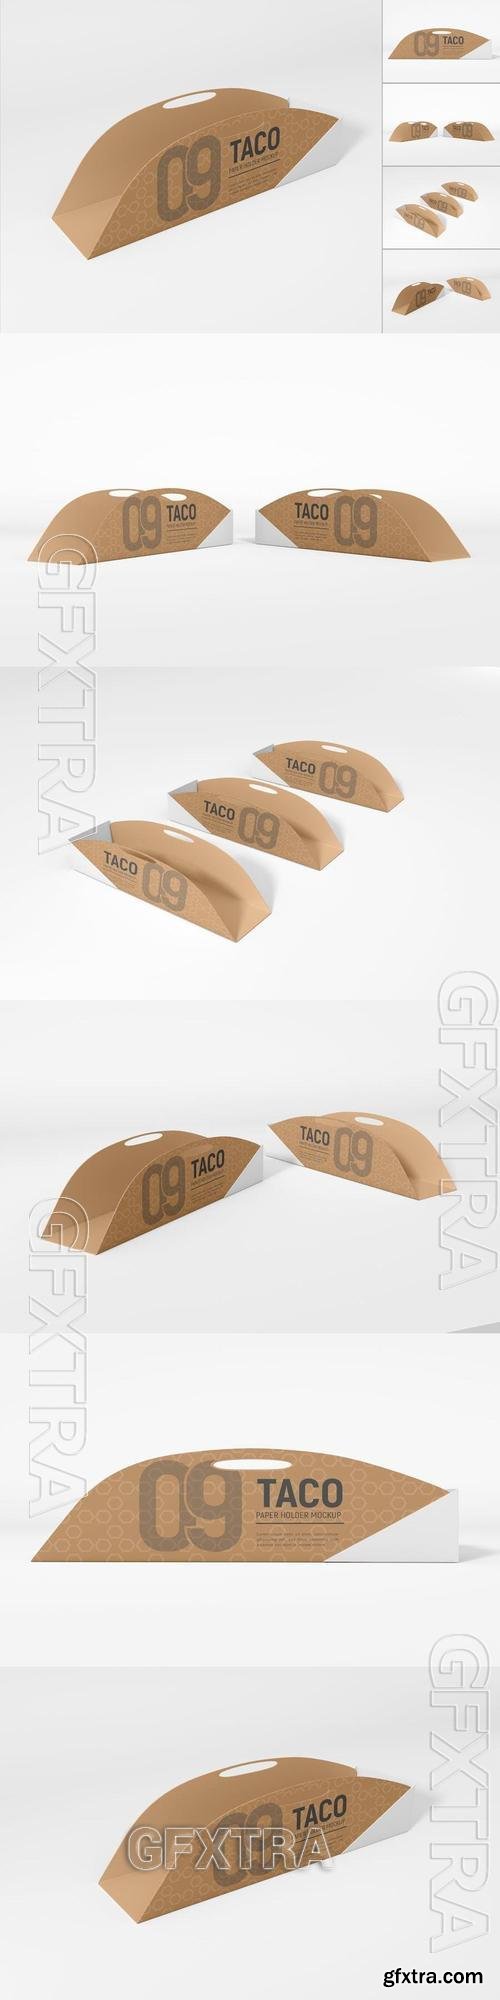 Kraft Paper Taco Holder Packaging Mockup Set U6JSVR7